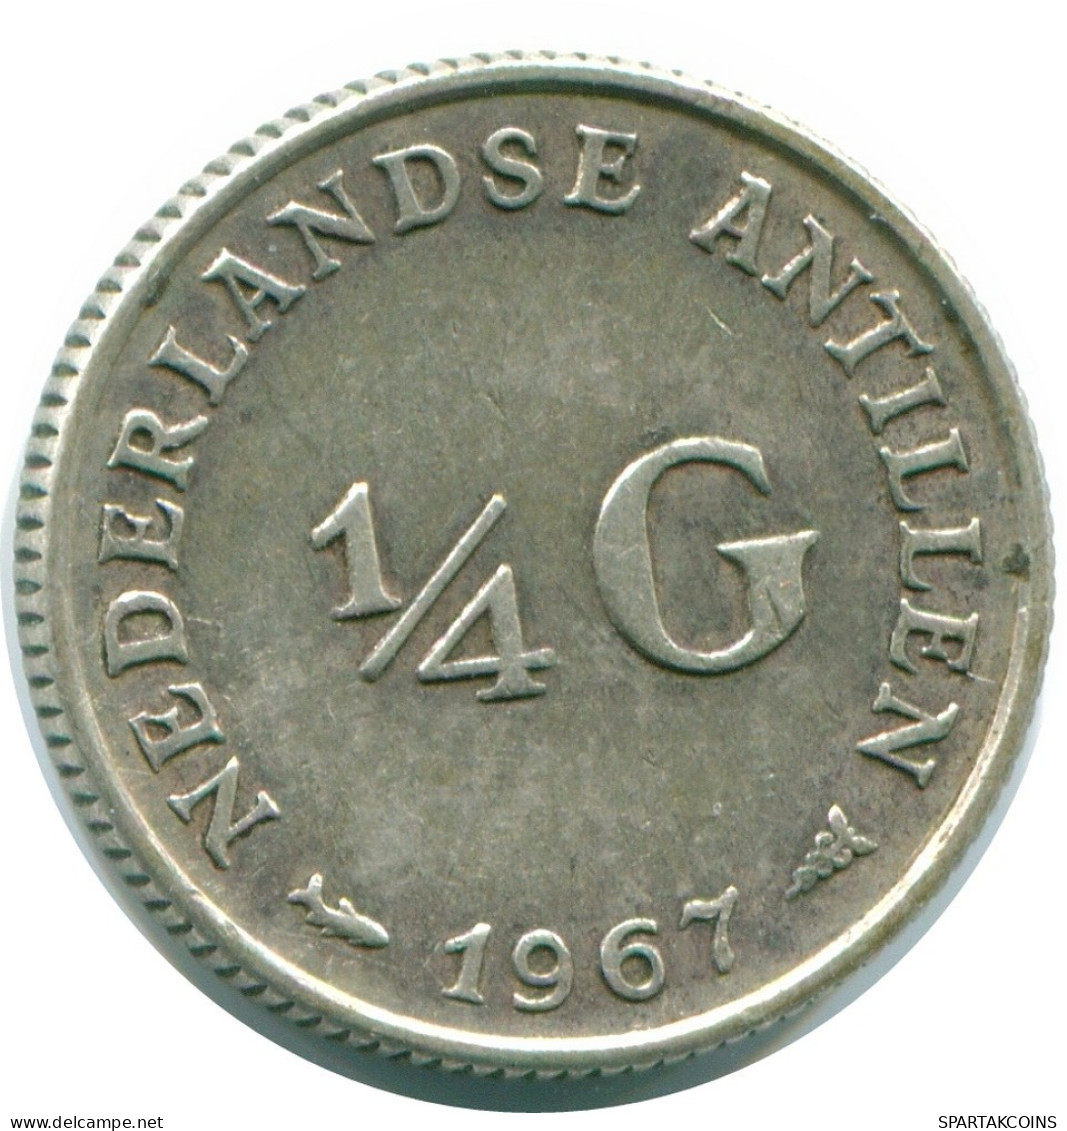 1/4 GULDEN 1967 NIEDERLÄNDISCHE ANTILLEN SILBER Koloniale Münze #NL11505.4.D.A - Antilles Néerlandaises